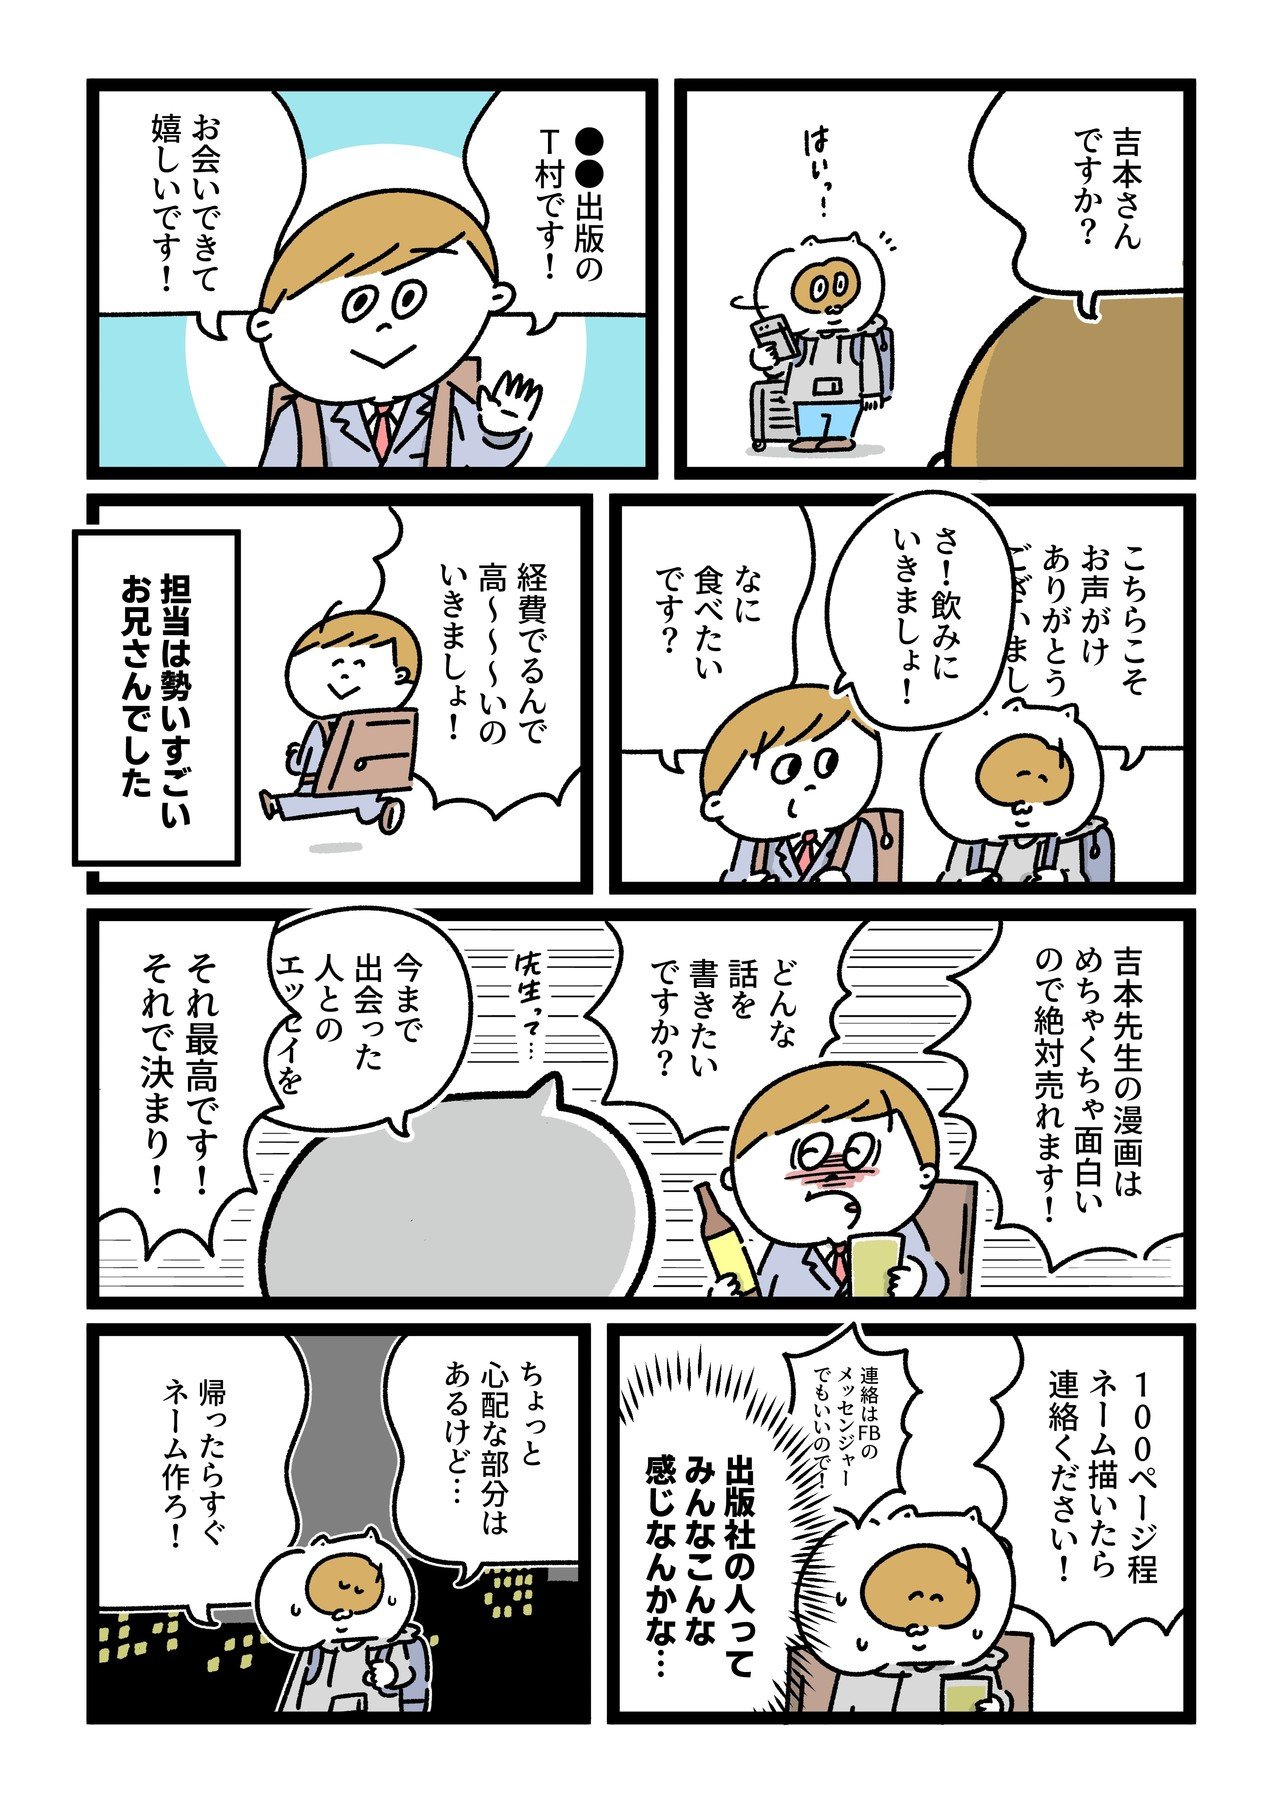 コミック28_出力_002